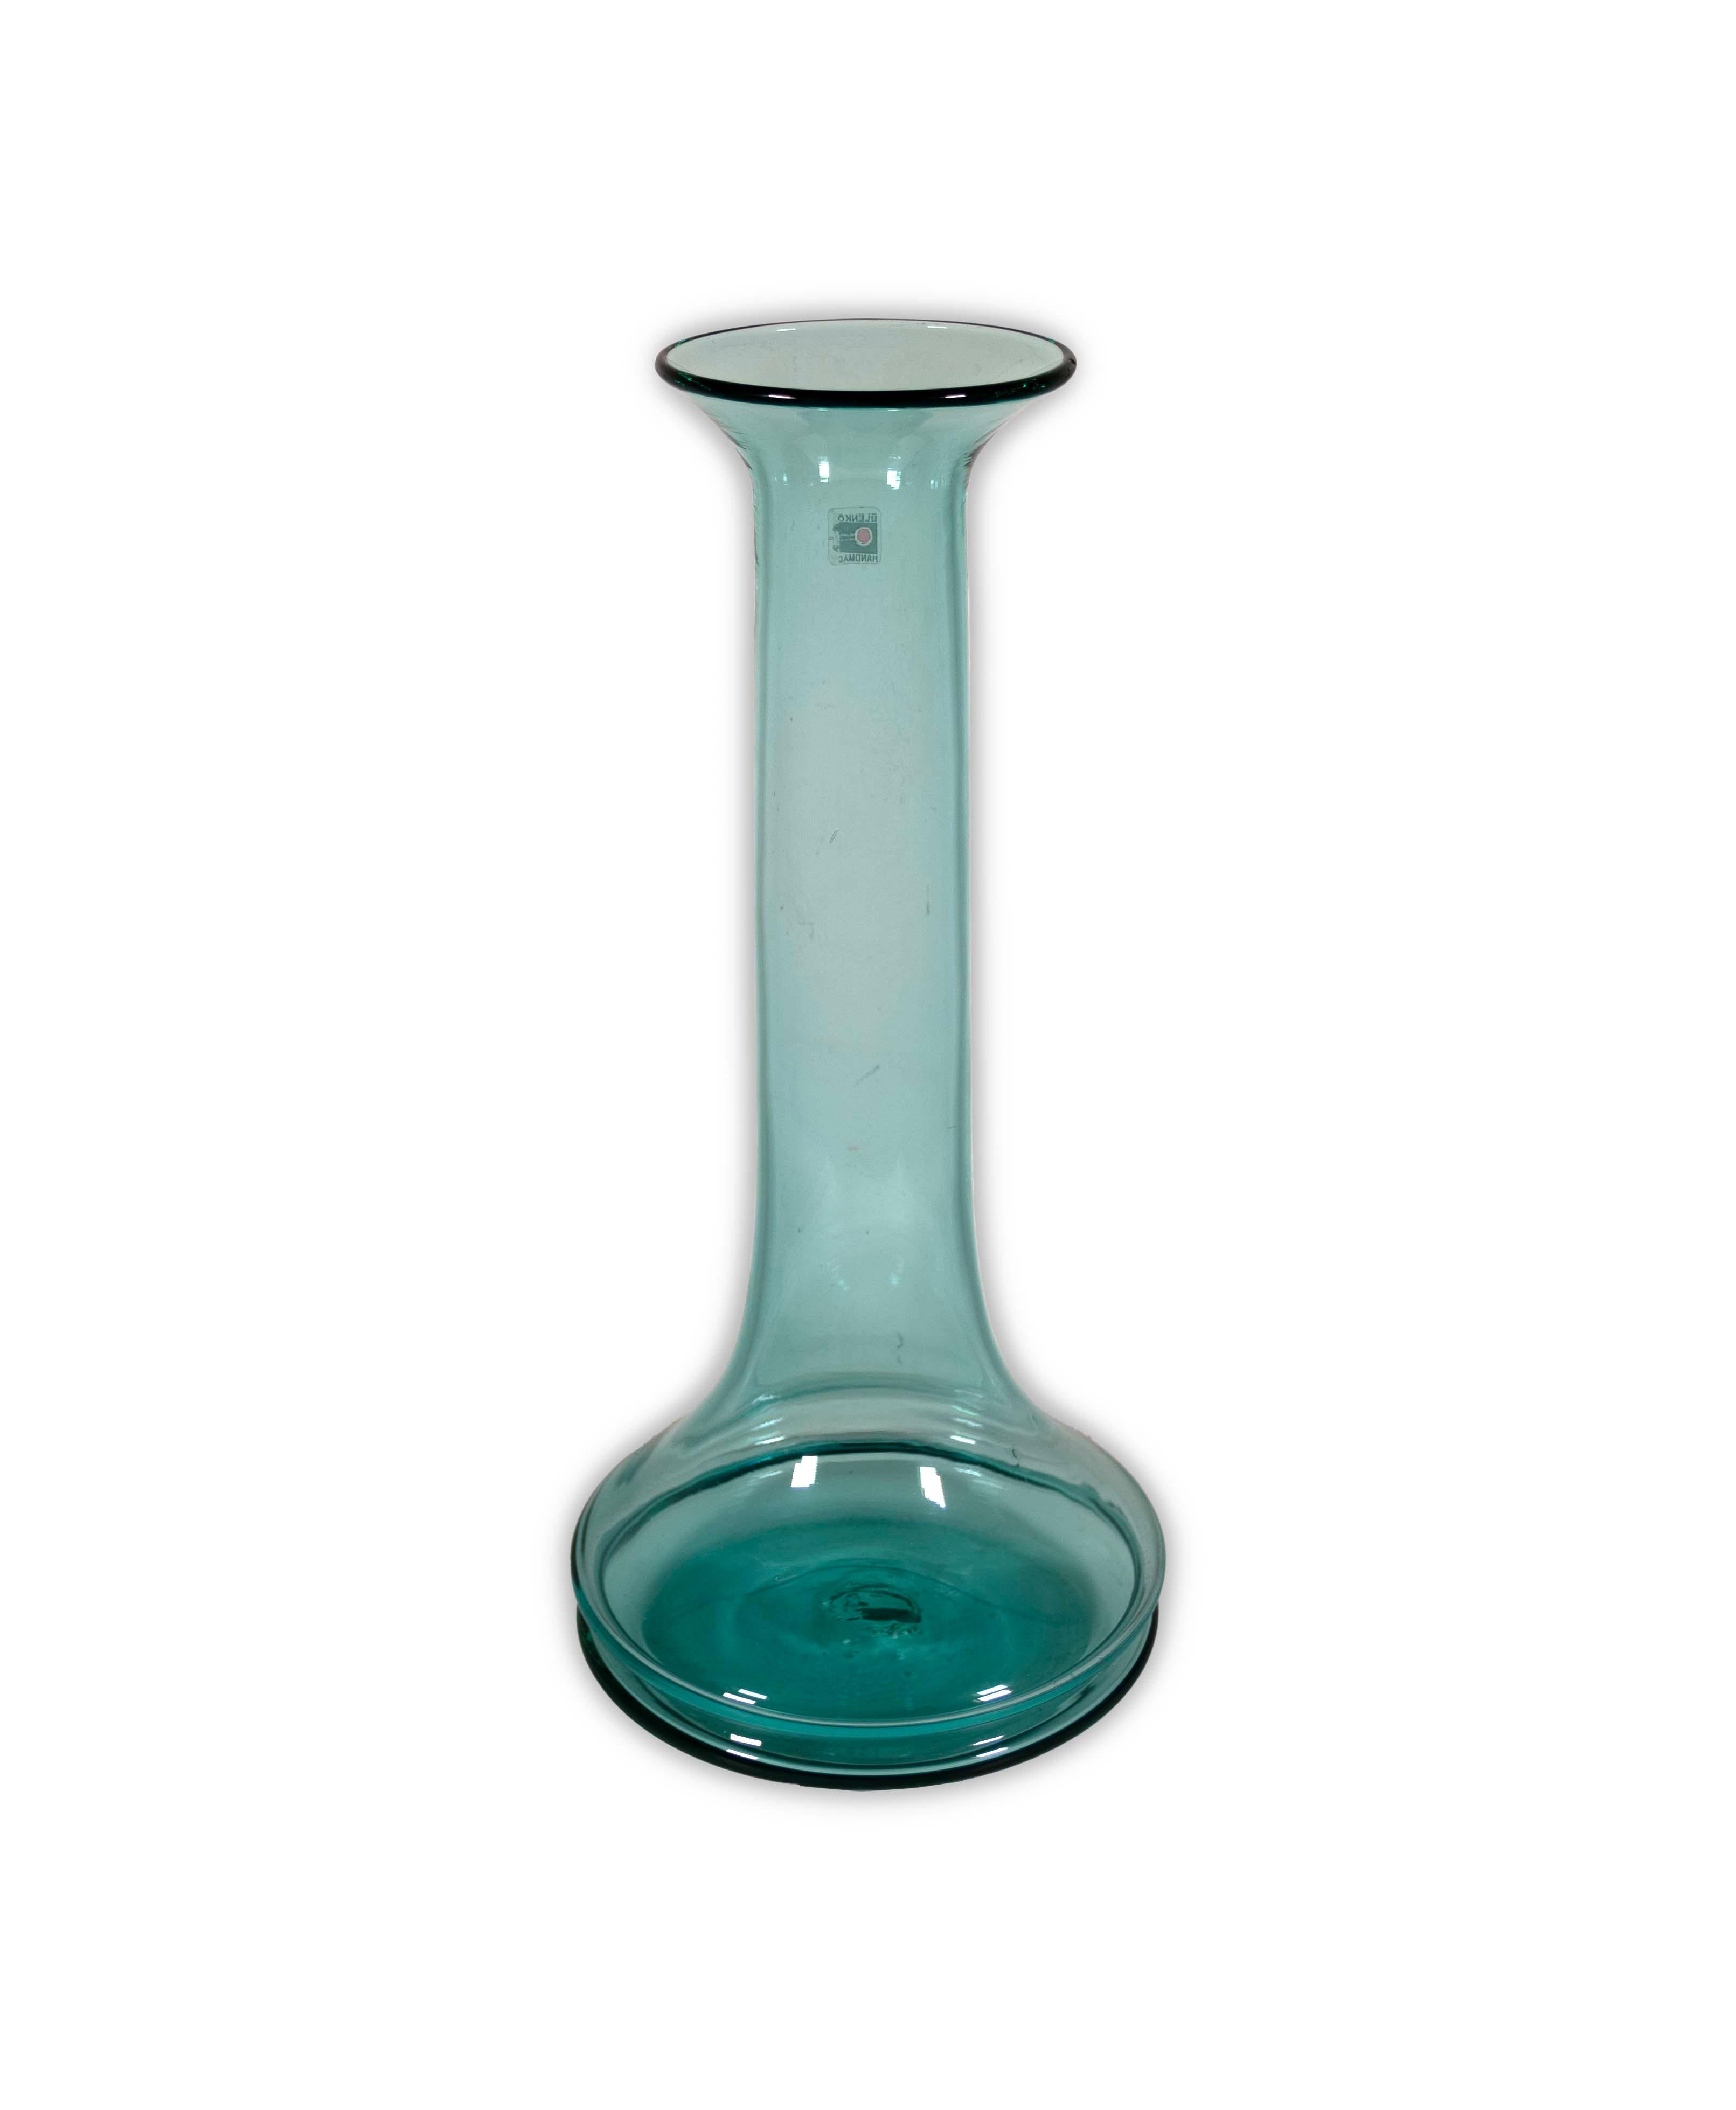  Die Don Shepherd for Blenko Turquoise Floor Glass Vase, Modell 789M, ist ein bemerkenswertes Stück moderner Glaskunst aus der Mitte des Jahrhunderts. Diese Vase, die von der renommierten Blenko Glass Company in Zusammenarbeit mit Don Shepherd